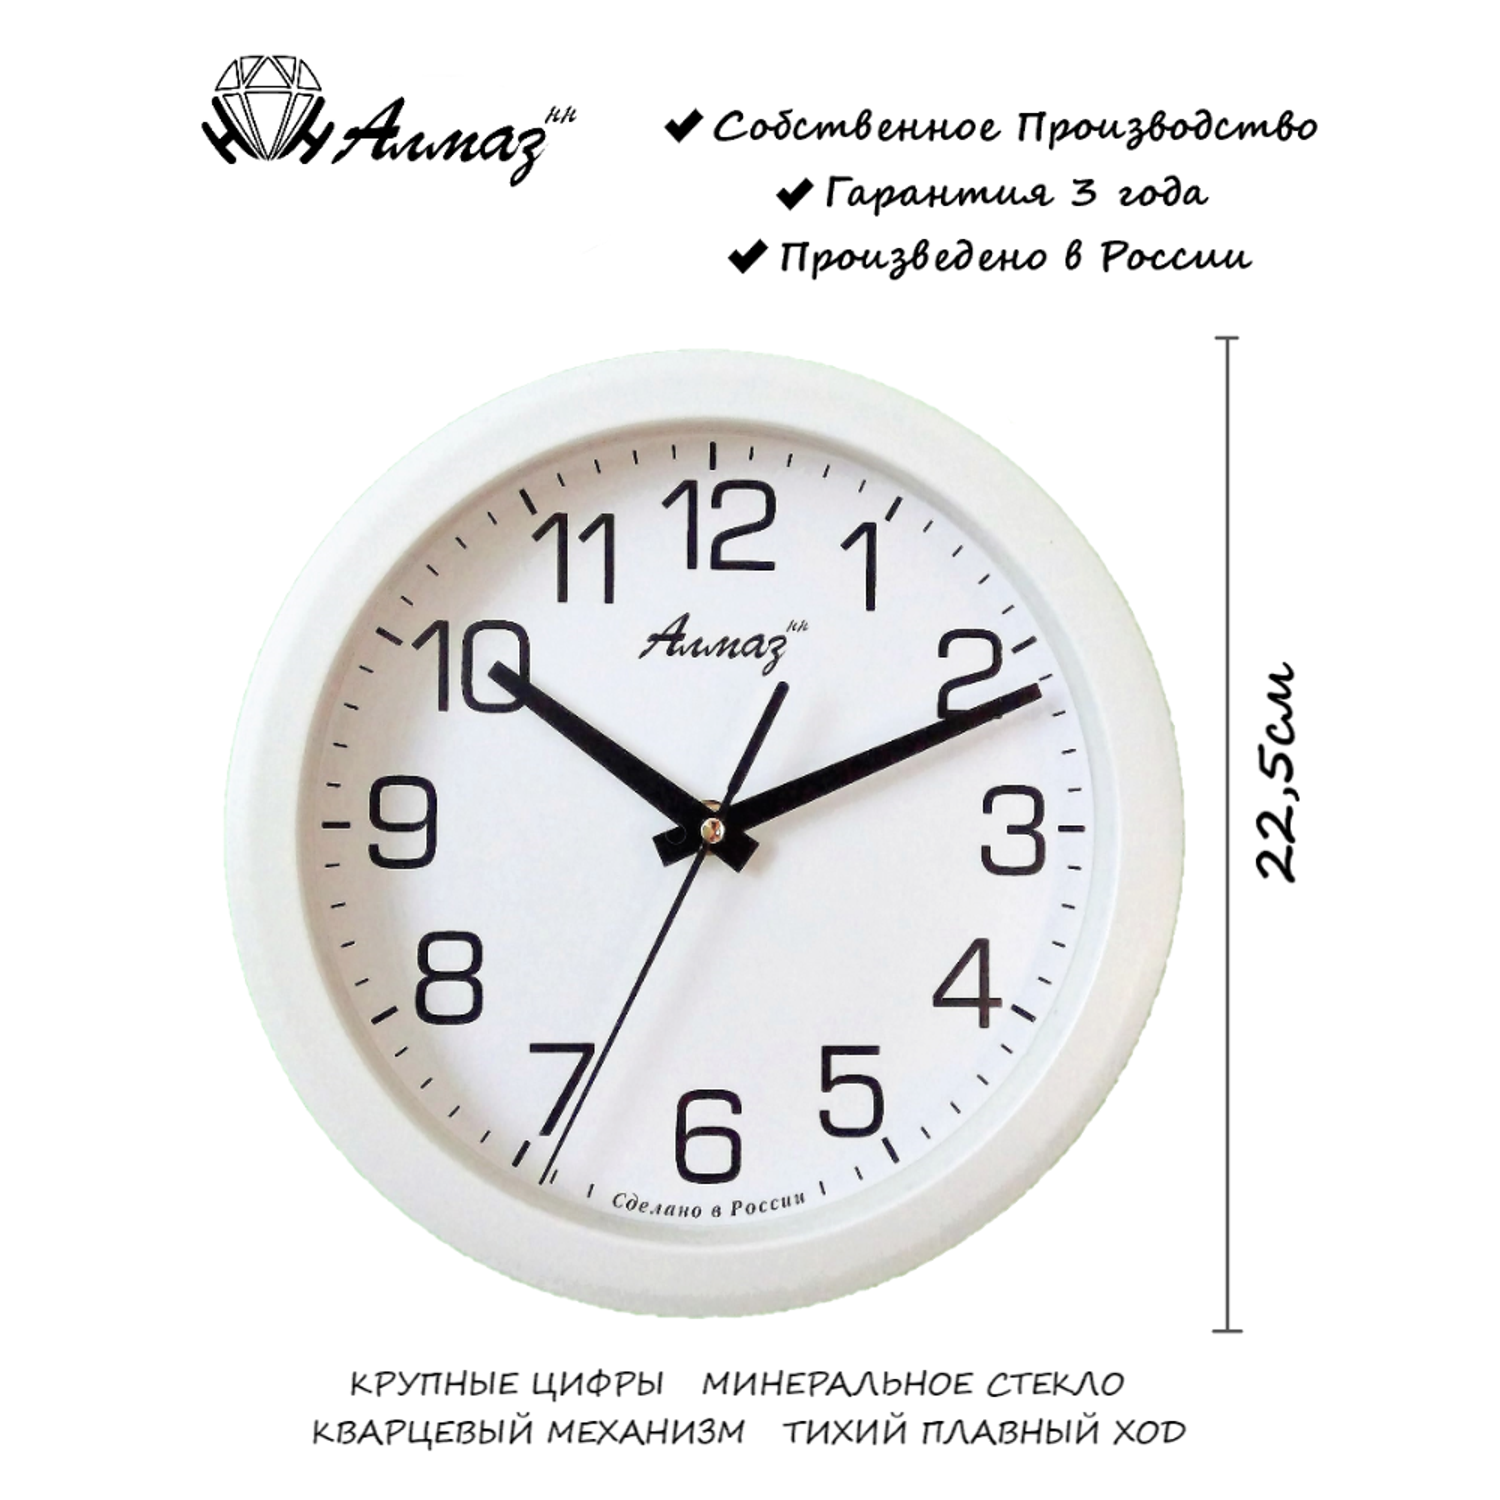 Часы АлмазНН настенные круглые белые 22.5 см - фото 2